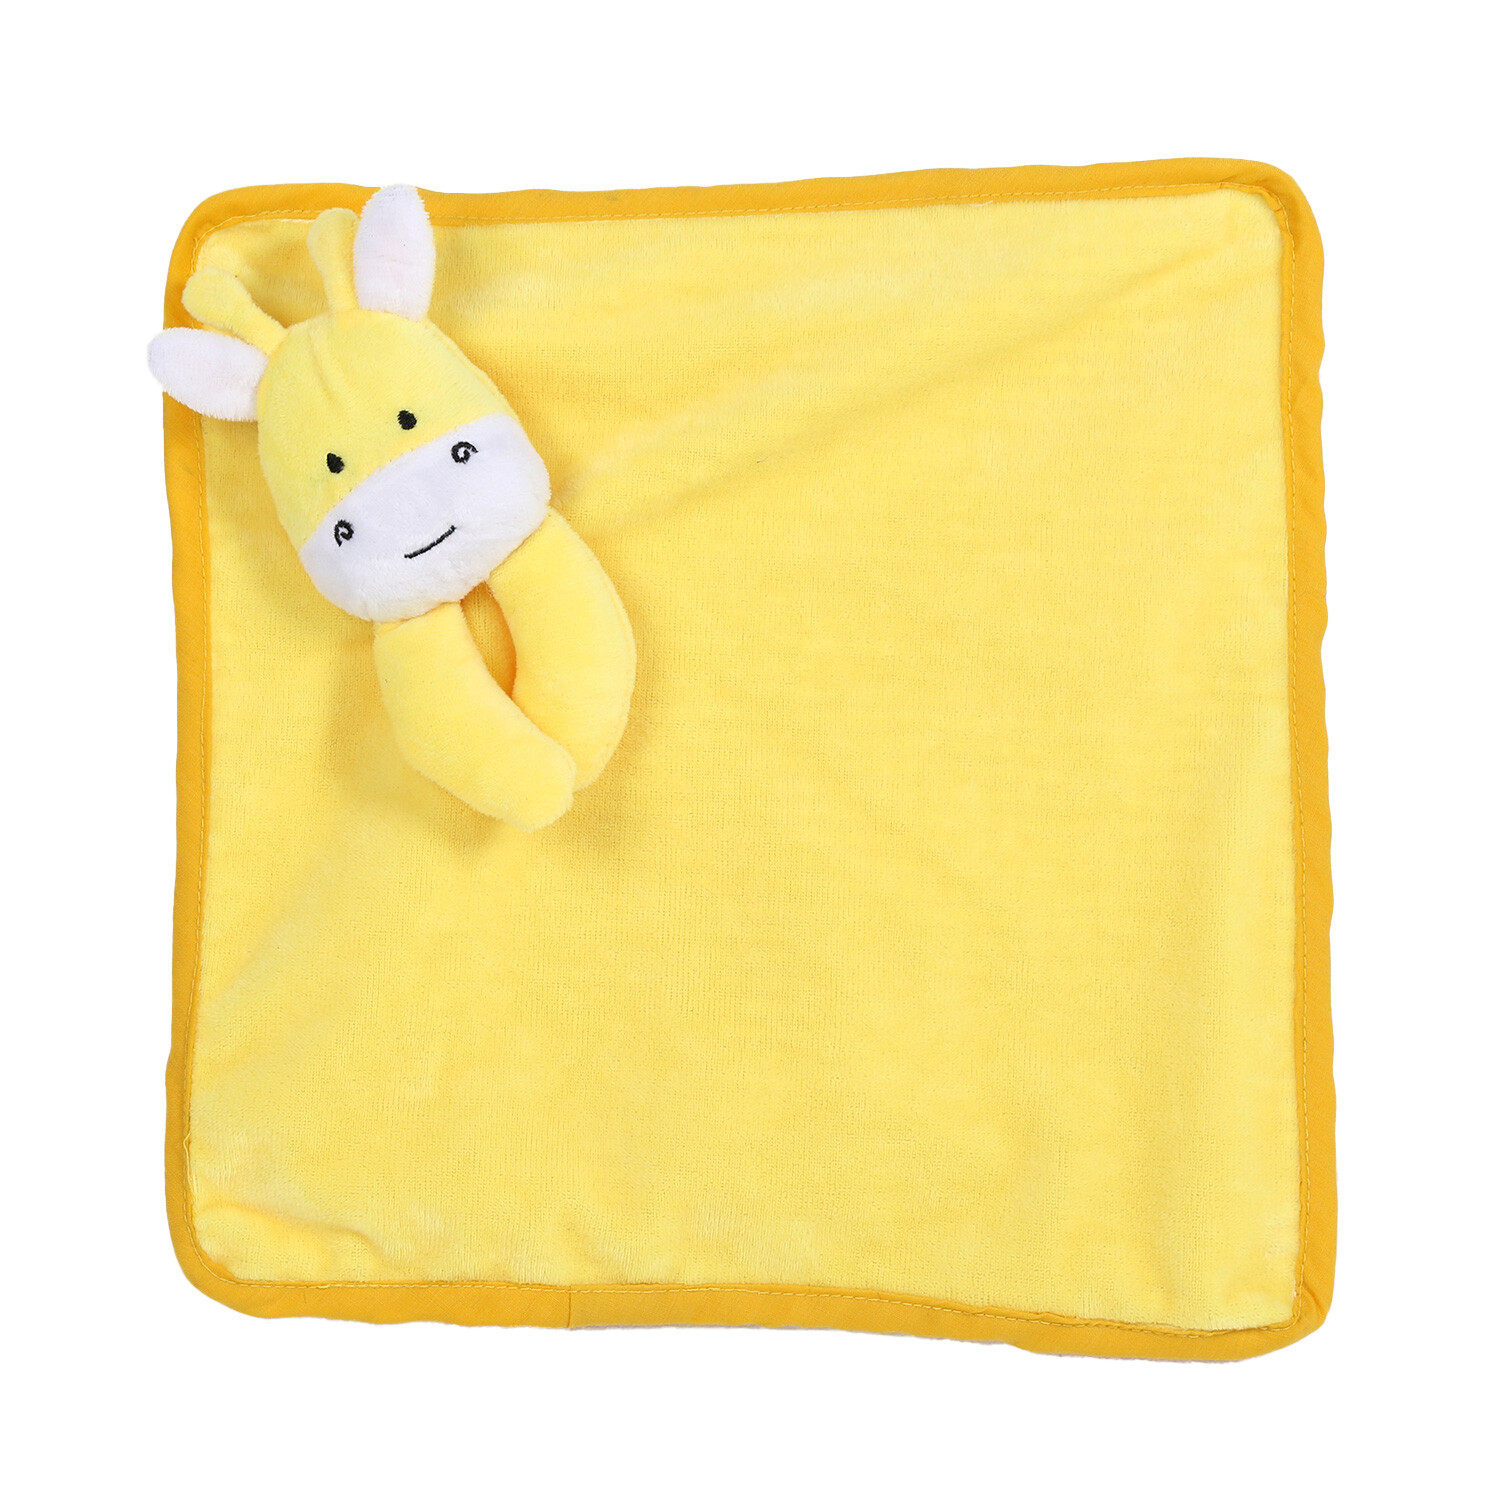 Comforter Giraffe Dog Toy - Yellow Image 2